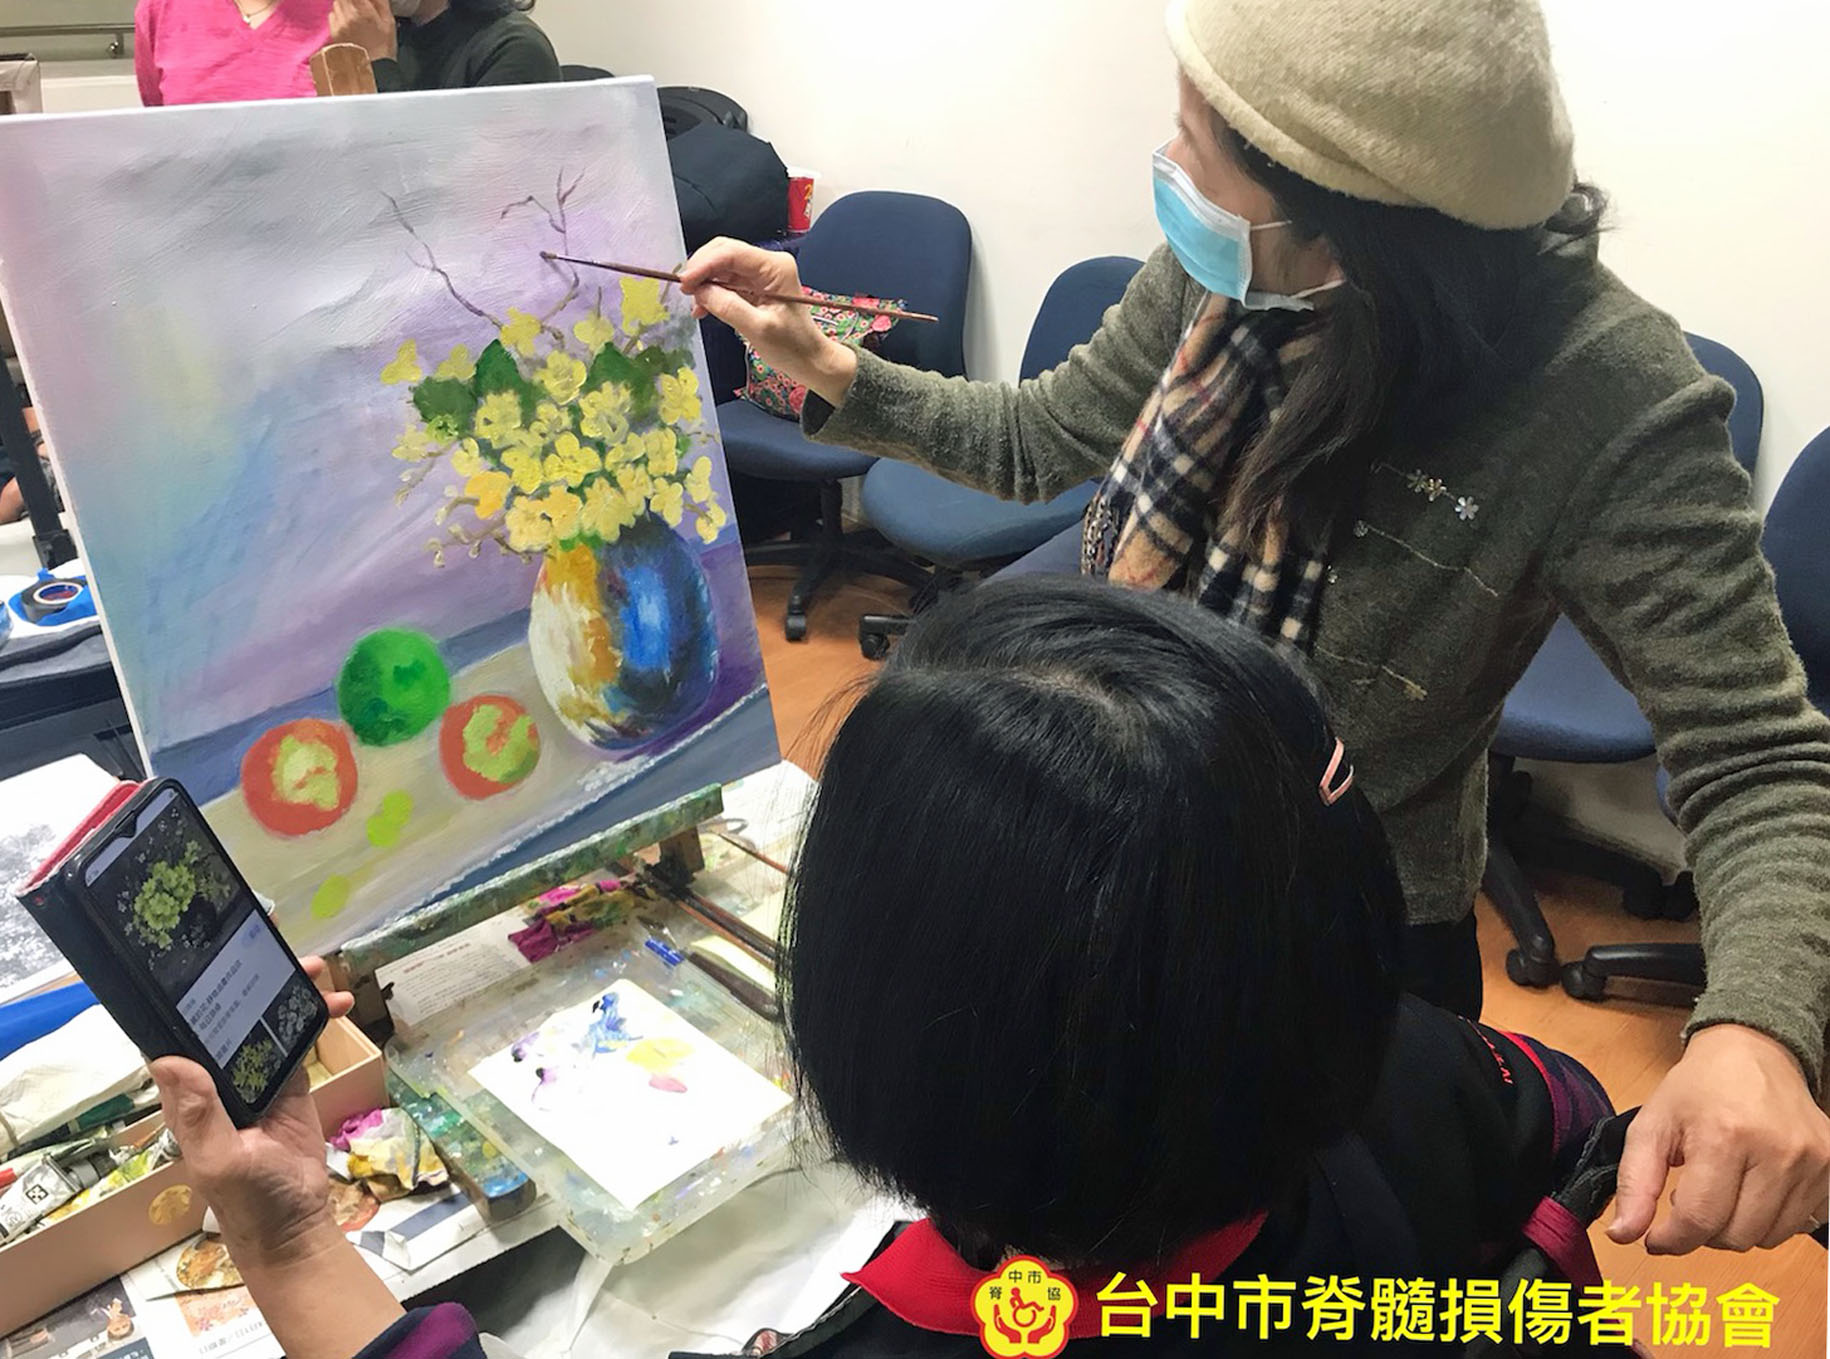 作者參加協會活動的繪劃課程，老師正在指導她的作品。